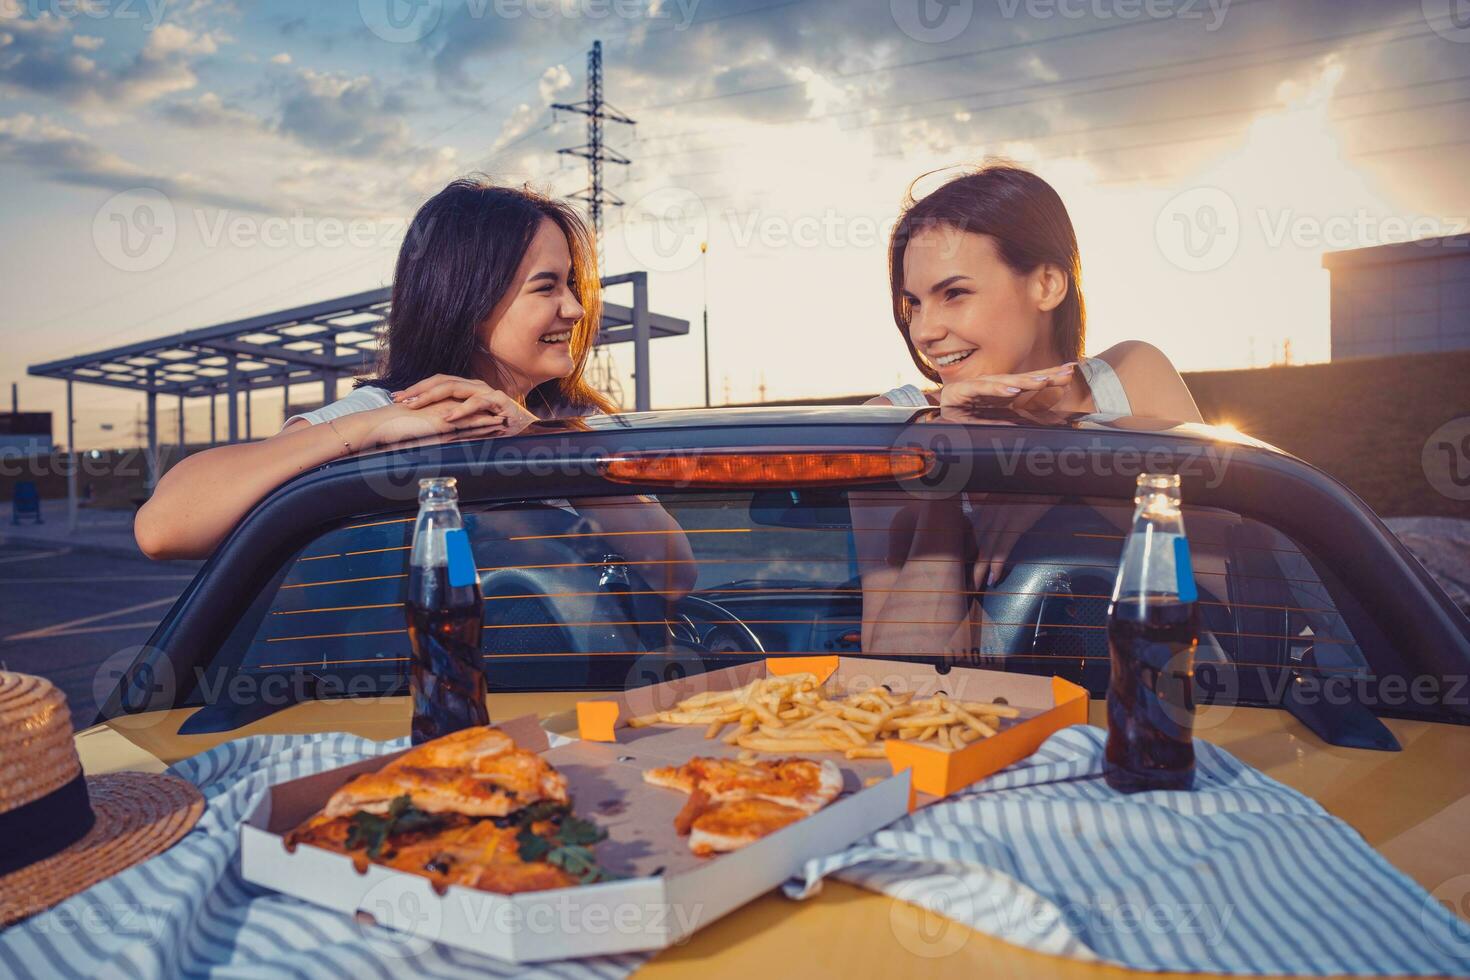 giovane femmine siamo avendo divertimento, in posa nel giallo auto roadster con francese patatine fritte, Pizza e bibita nel bicchiere bottiglie su suo tronco. veloce cibo. finto su foto